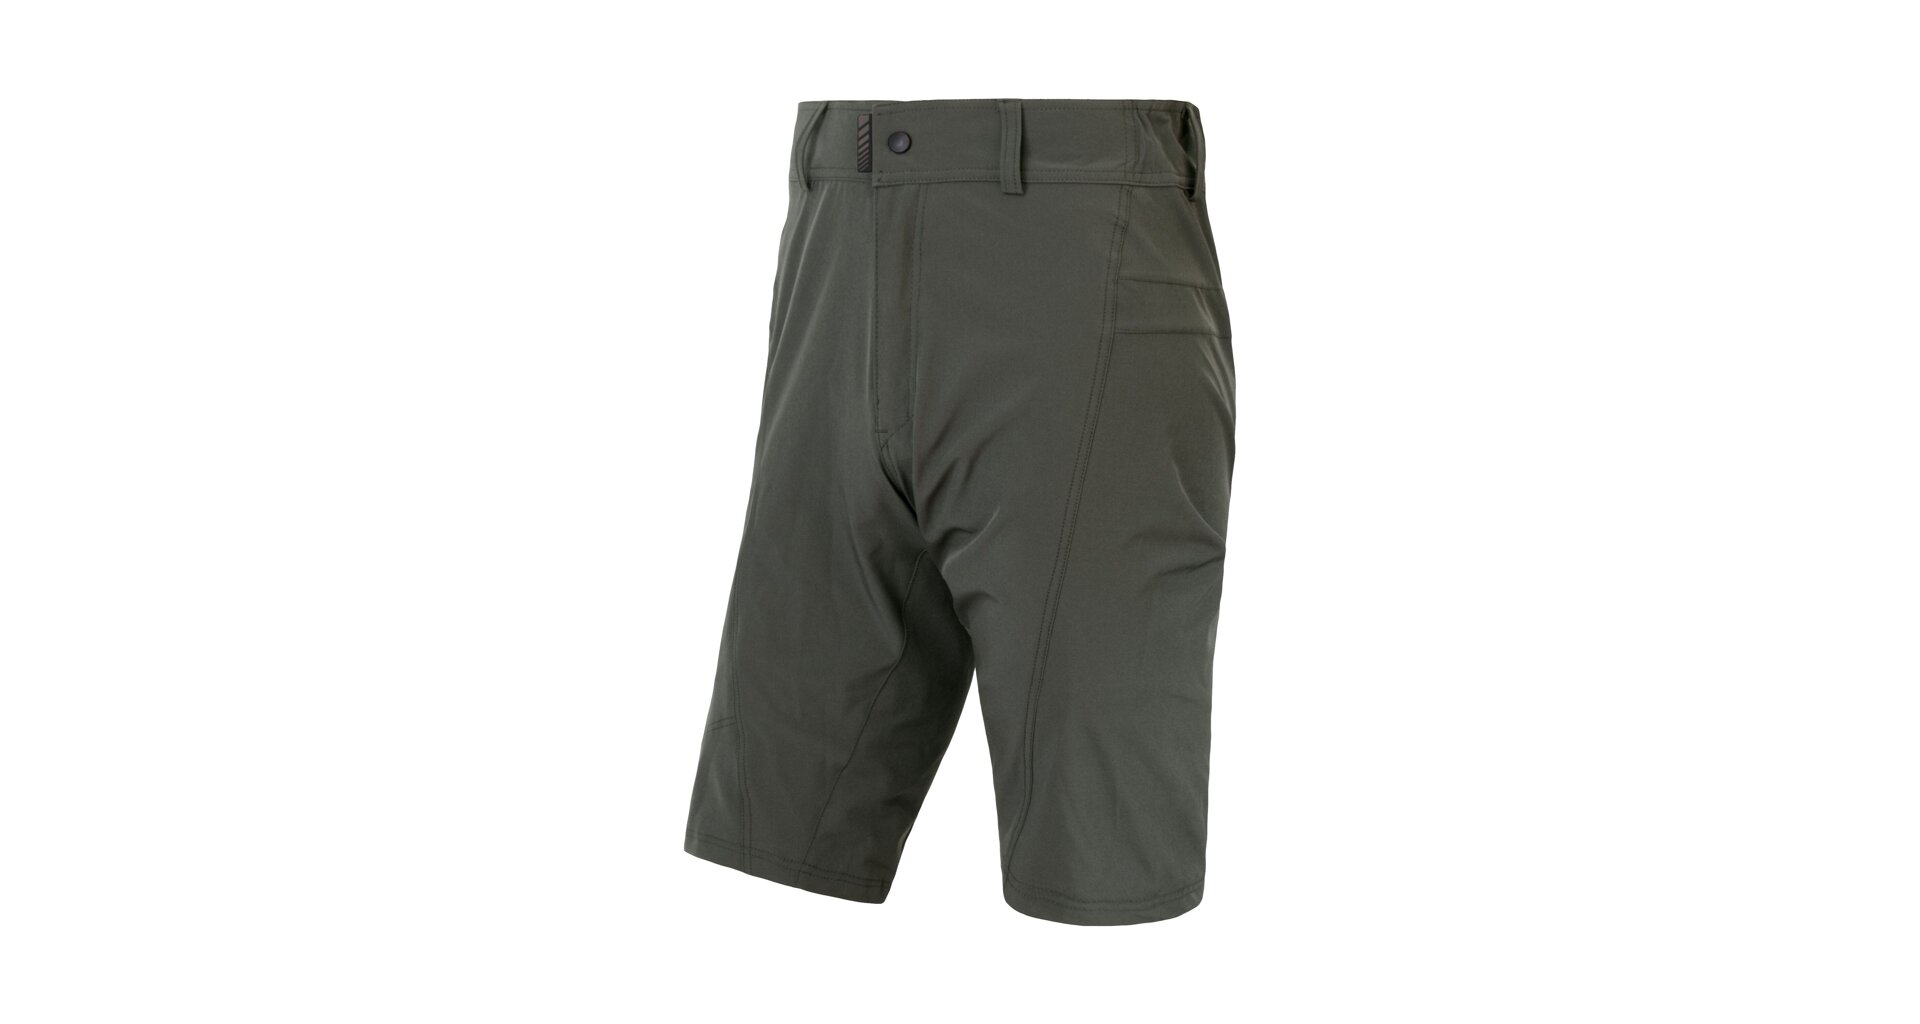 SENSOR HELIUM pánské kalhoty s cyklovložkou krátké volné olive green Velikost: M